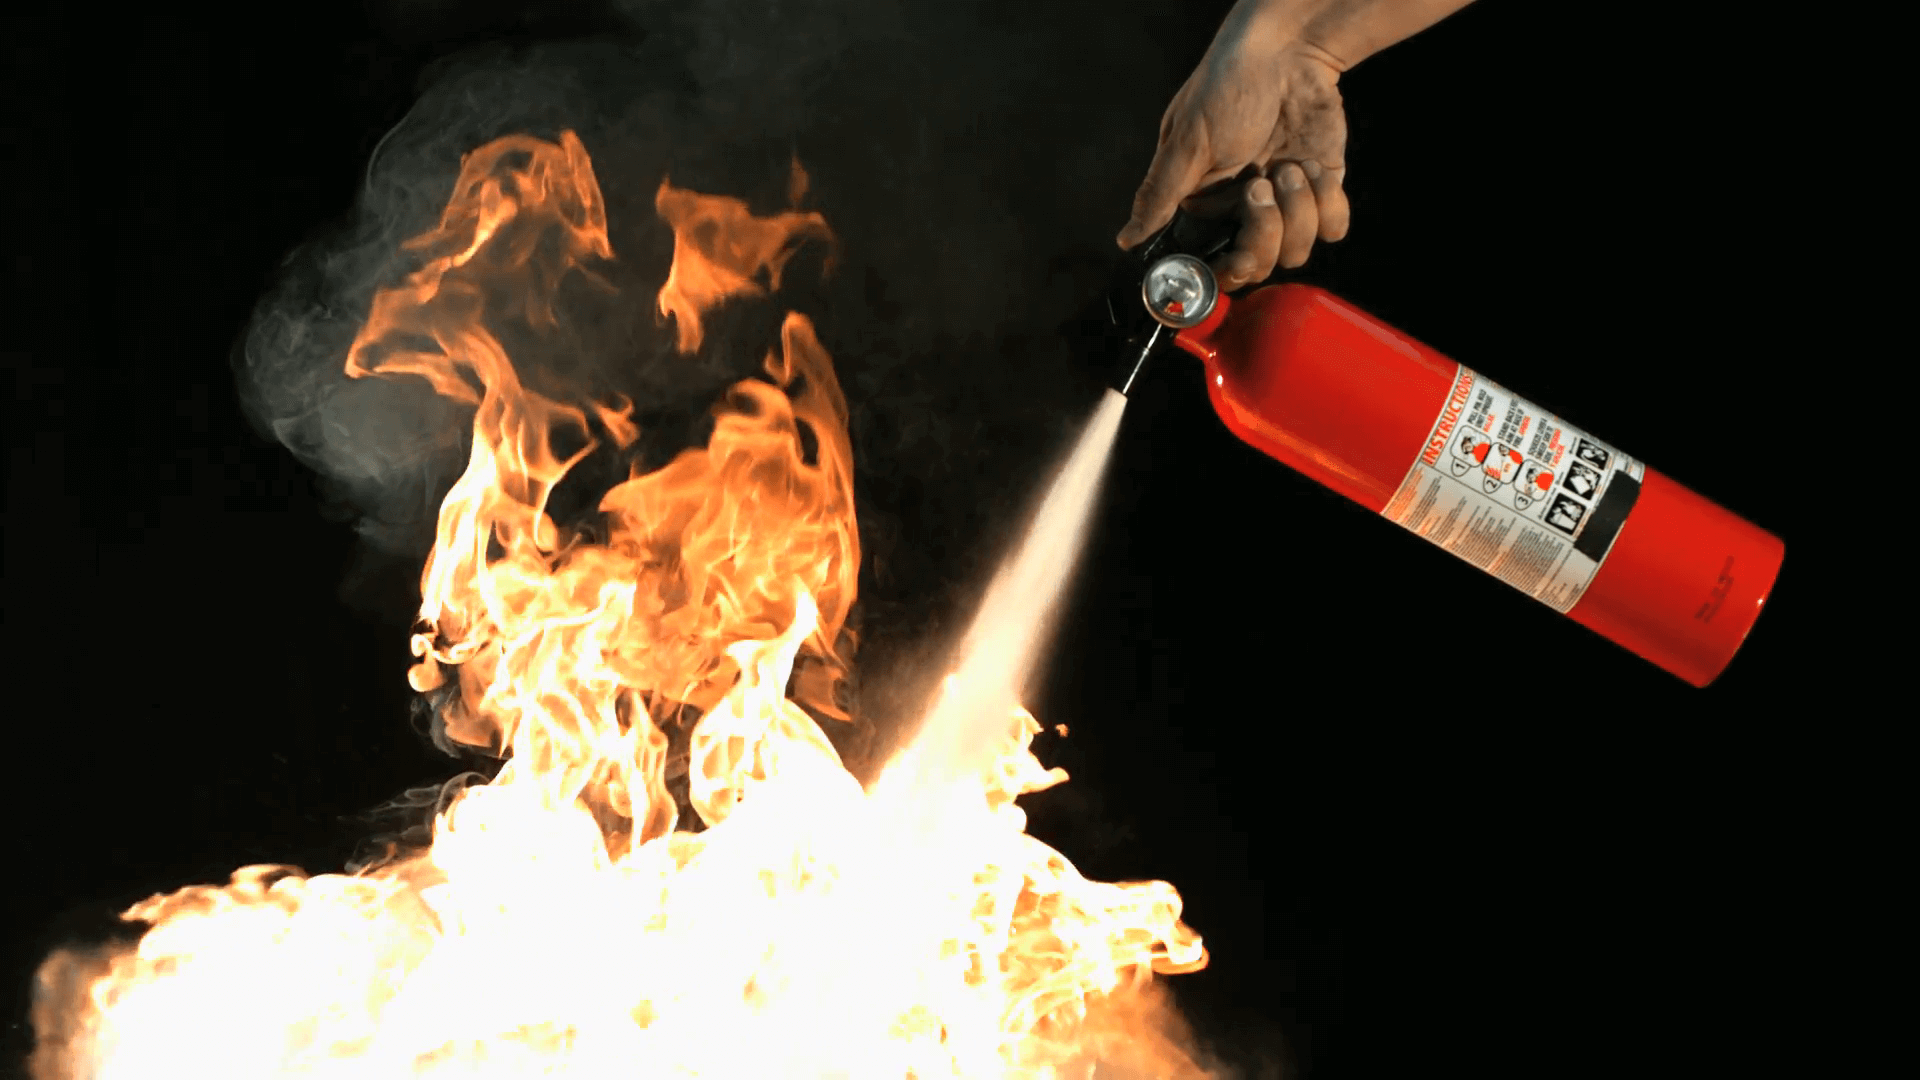 Fire Suppression and Extinguishment